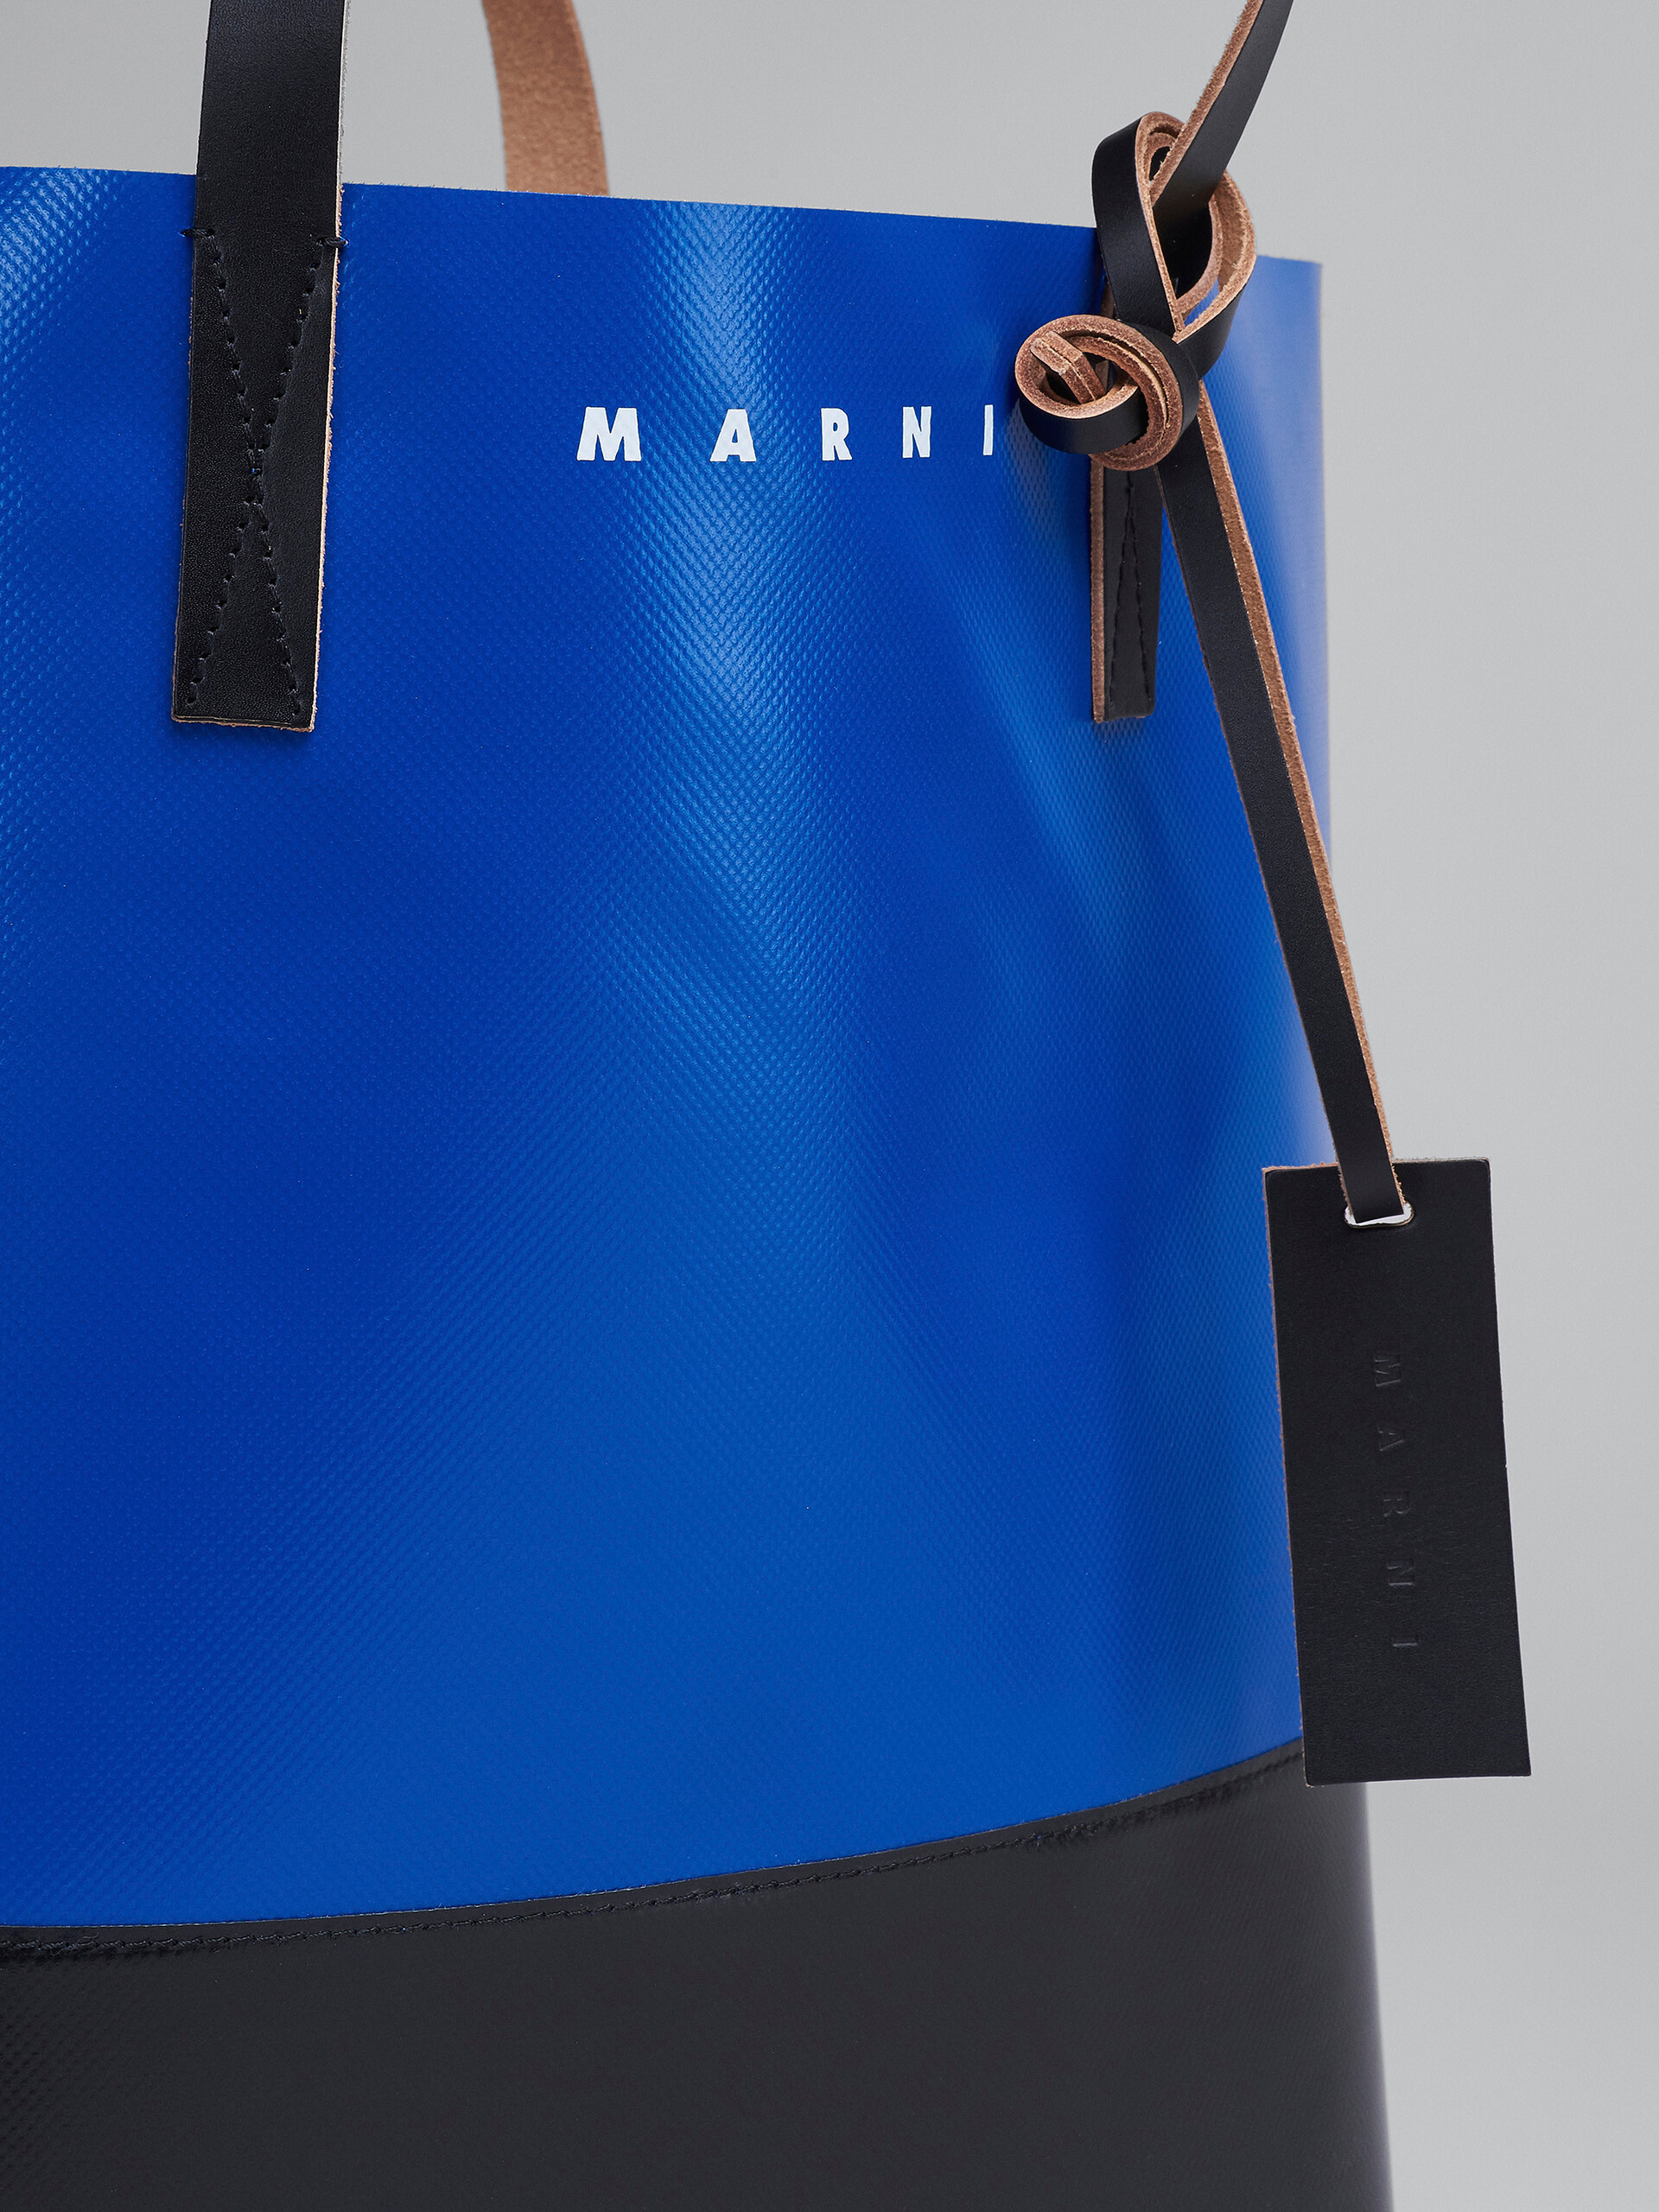 【新品未使用】marni PVCトートバッグ ブラック&ブルー